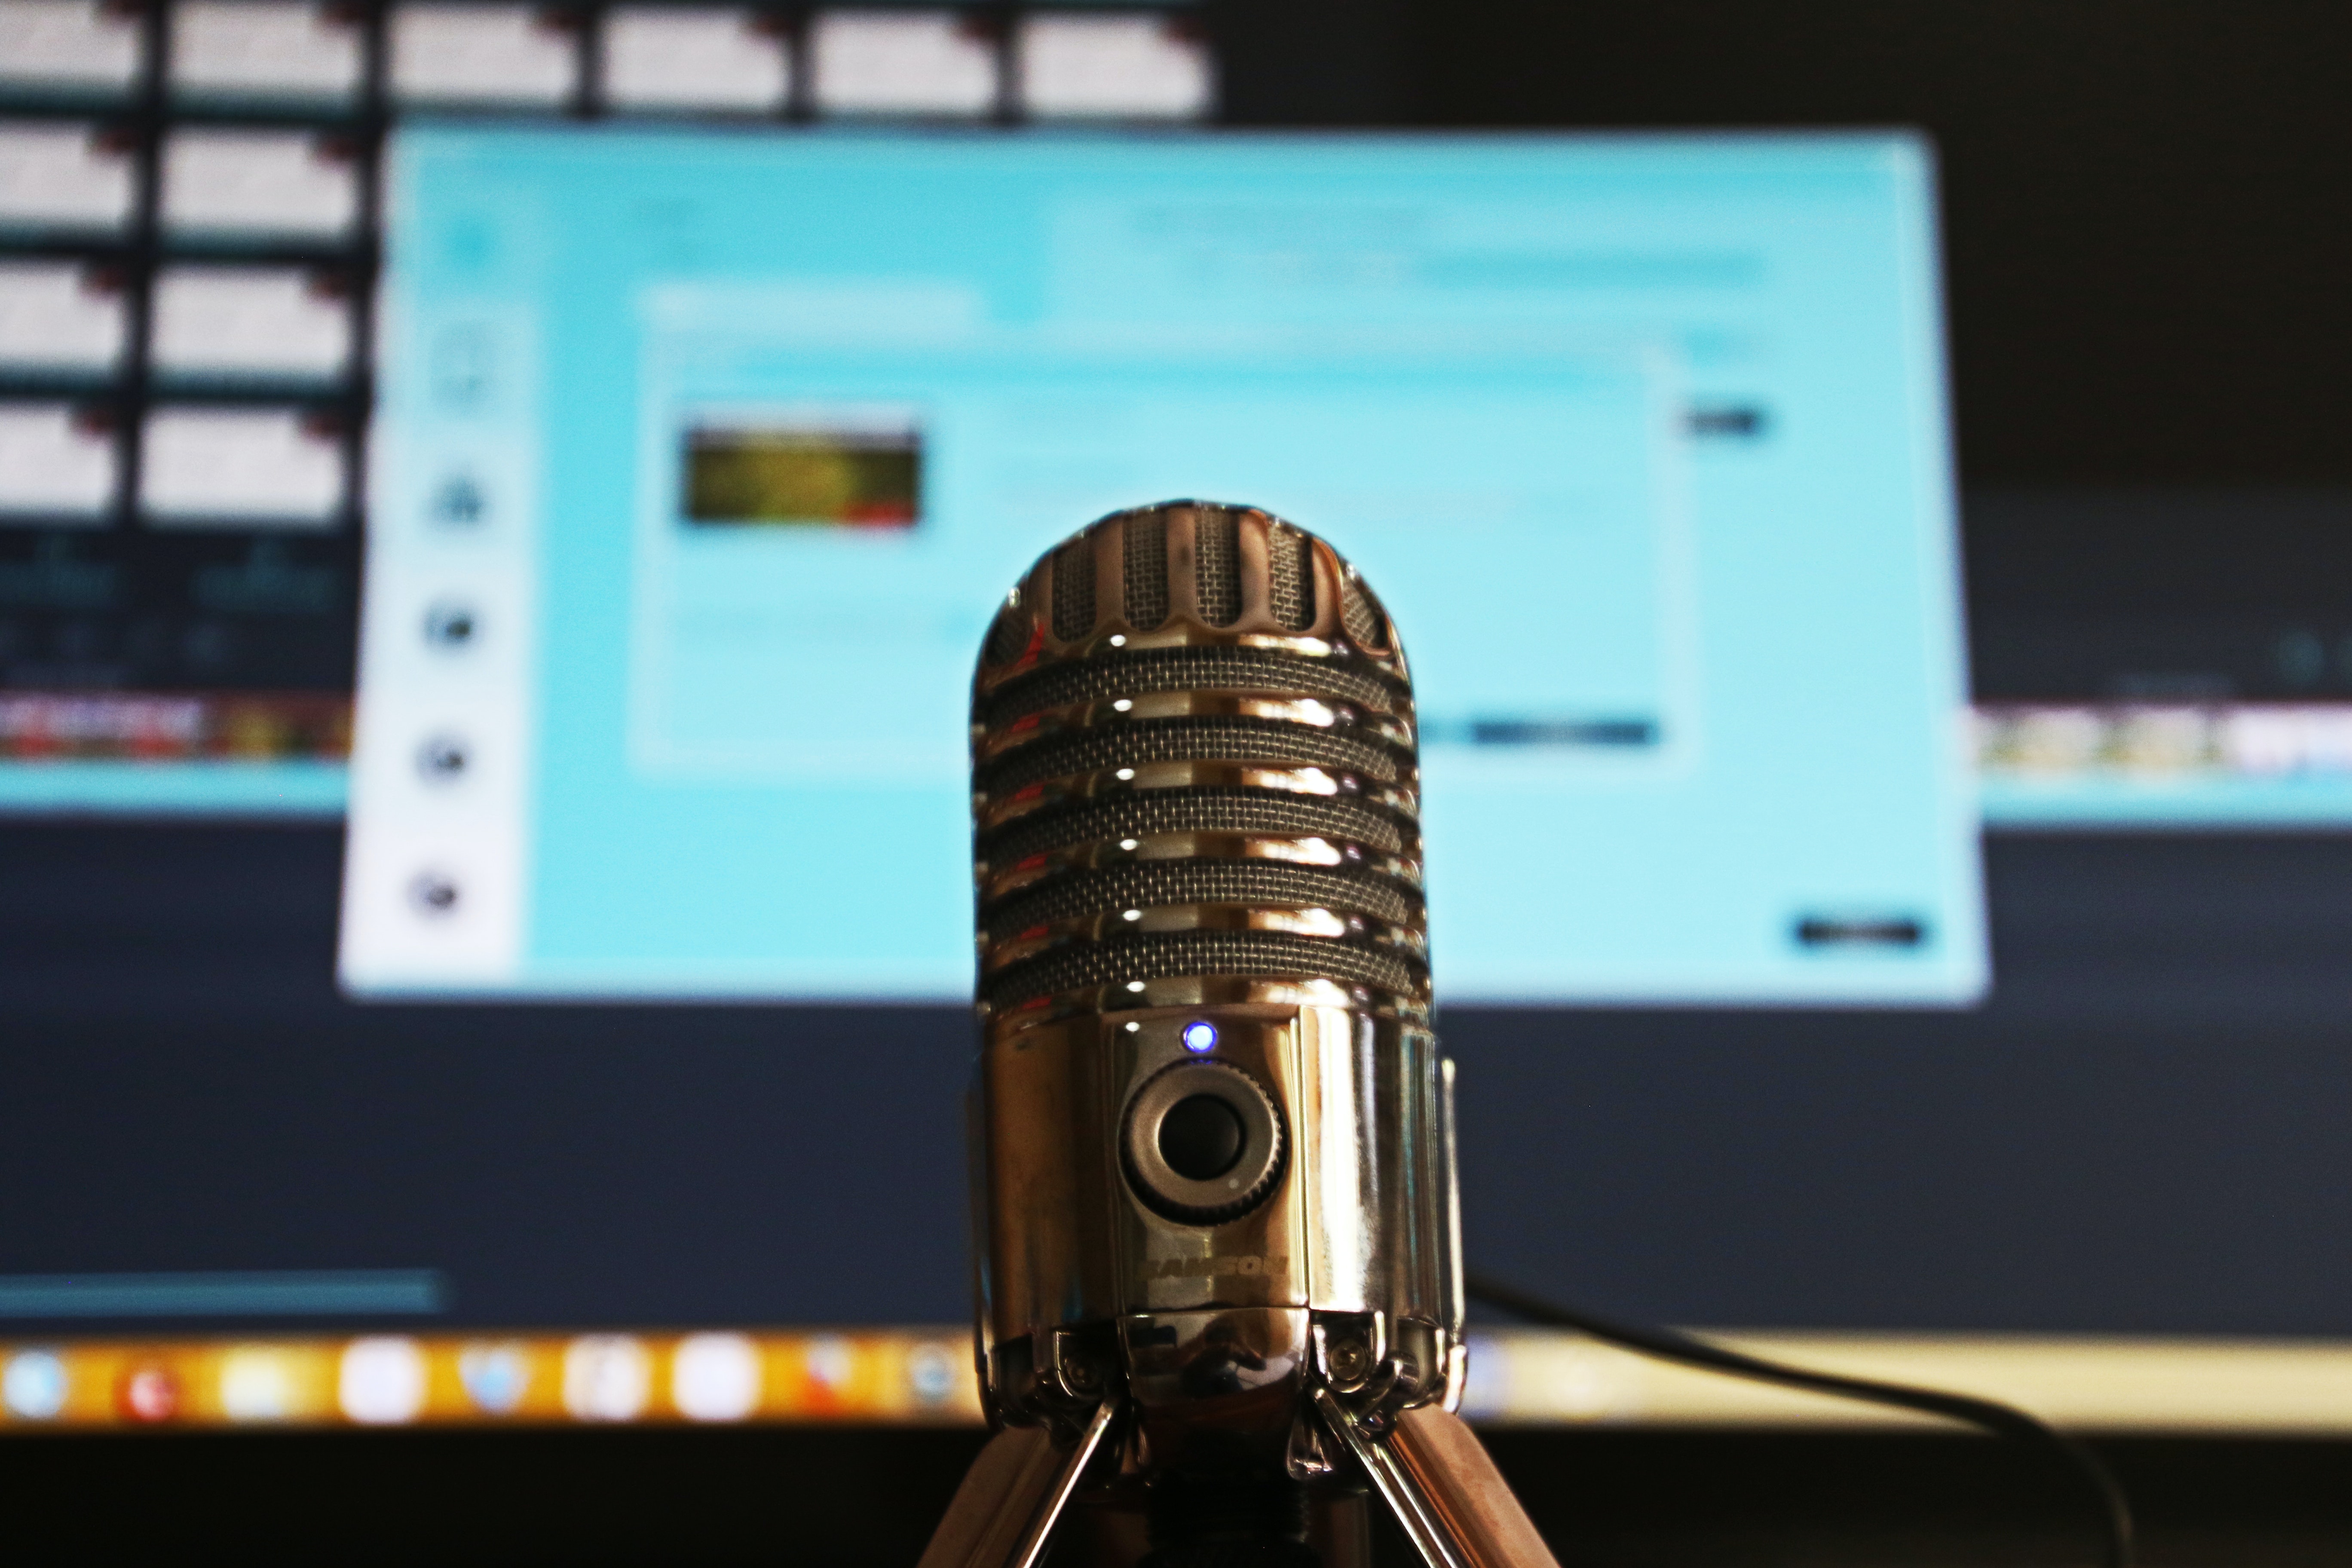 microfone e computador aberto em página de edição de um podcast 